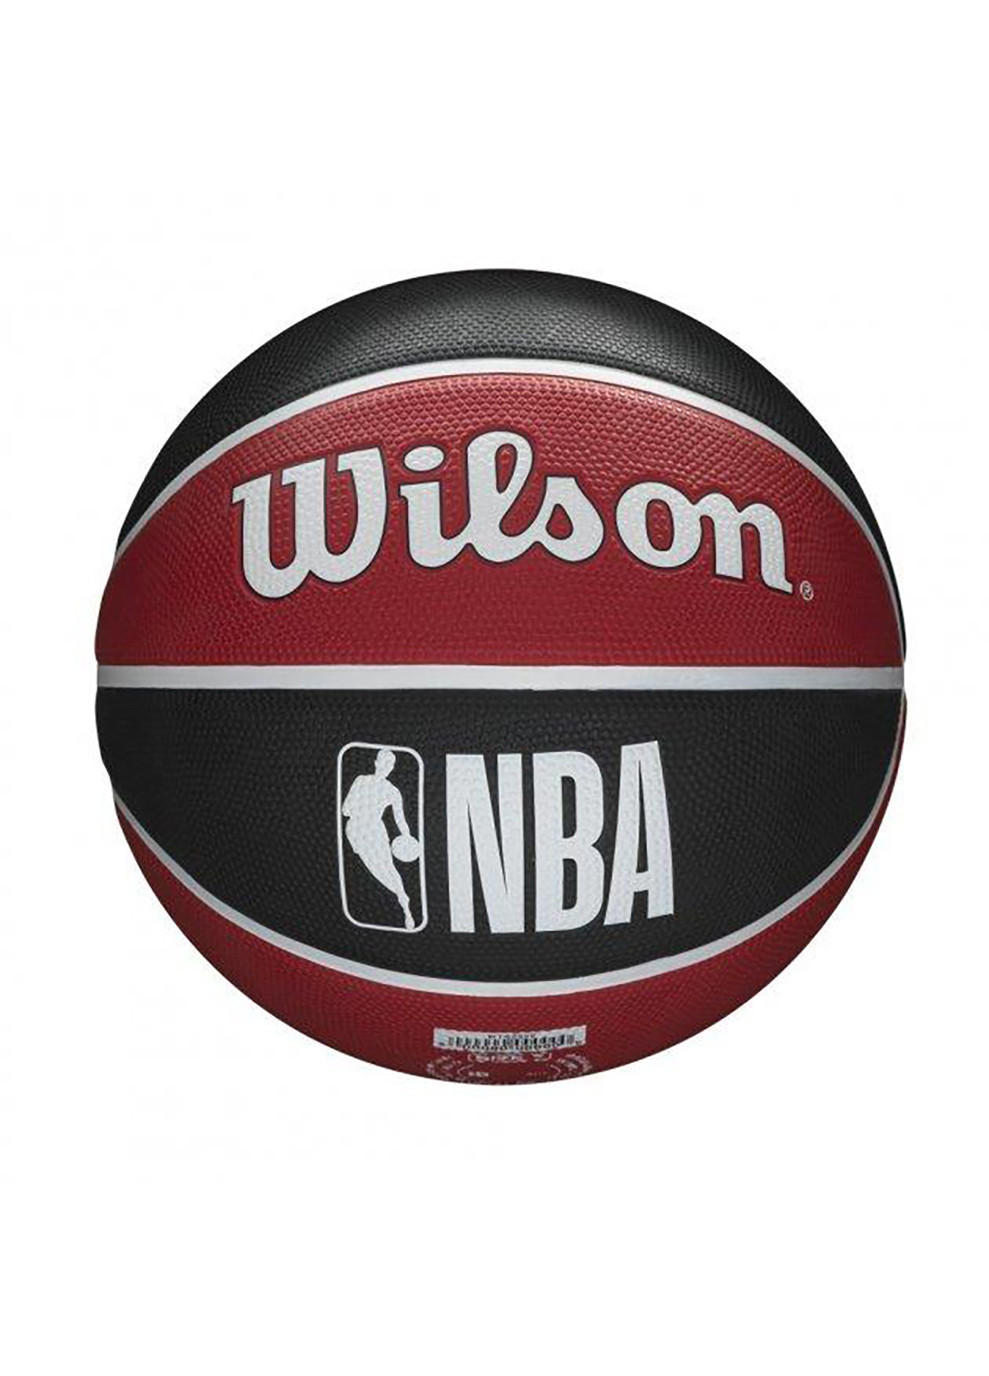 Универсальный Баскетбольный Мяч NBA Team Tribute Chicago Bulls р. 7 (WTB1300XBCHI) Wilson (253678177)